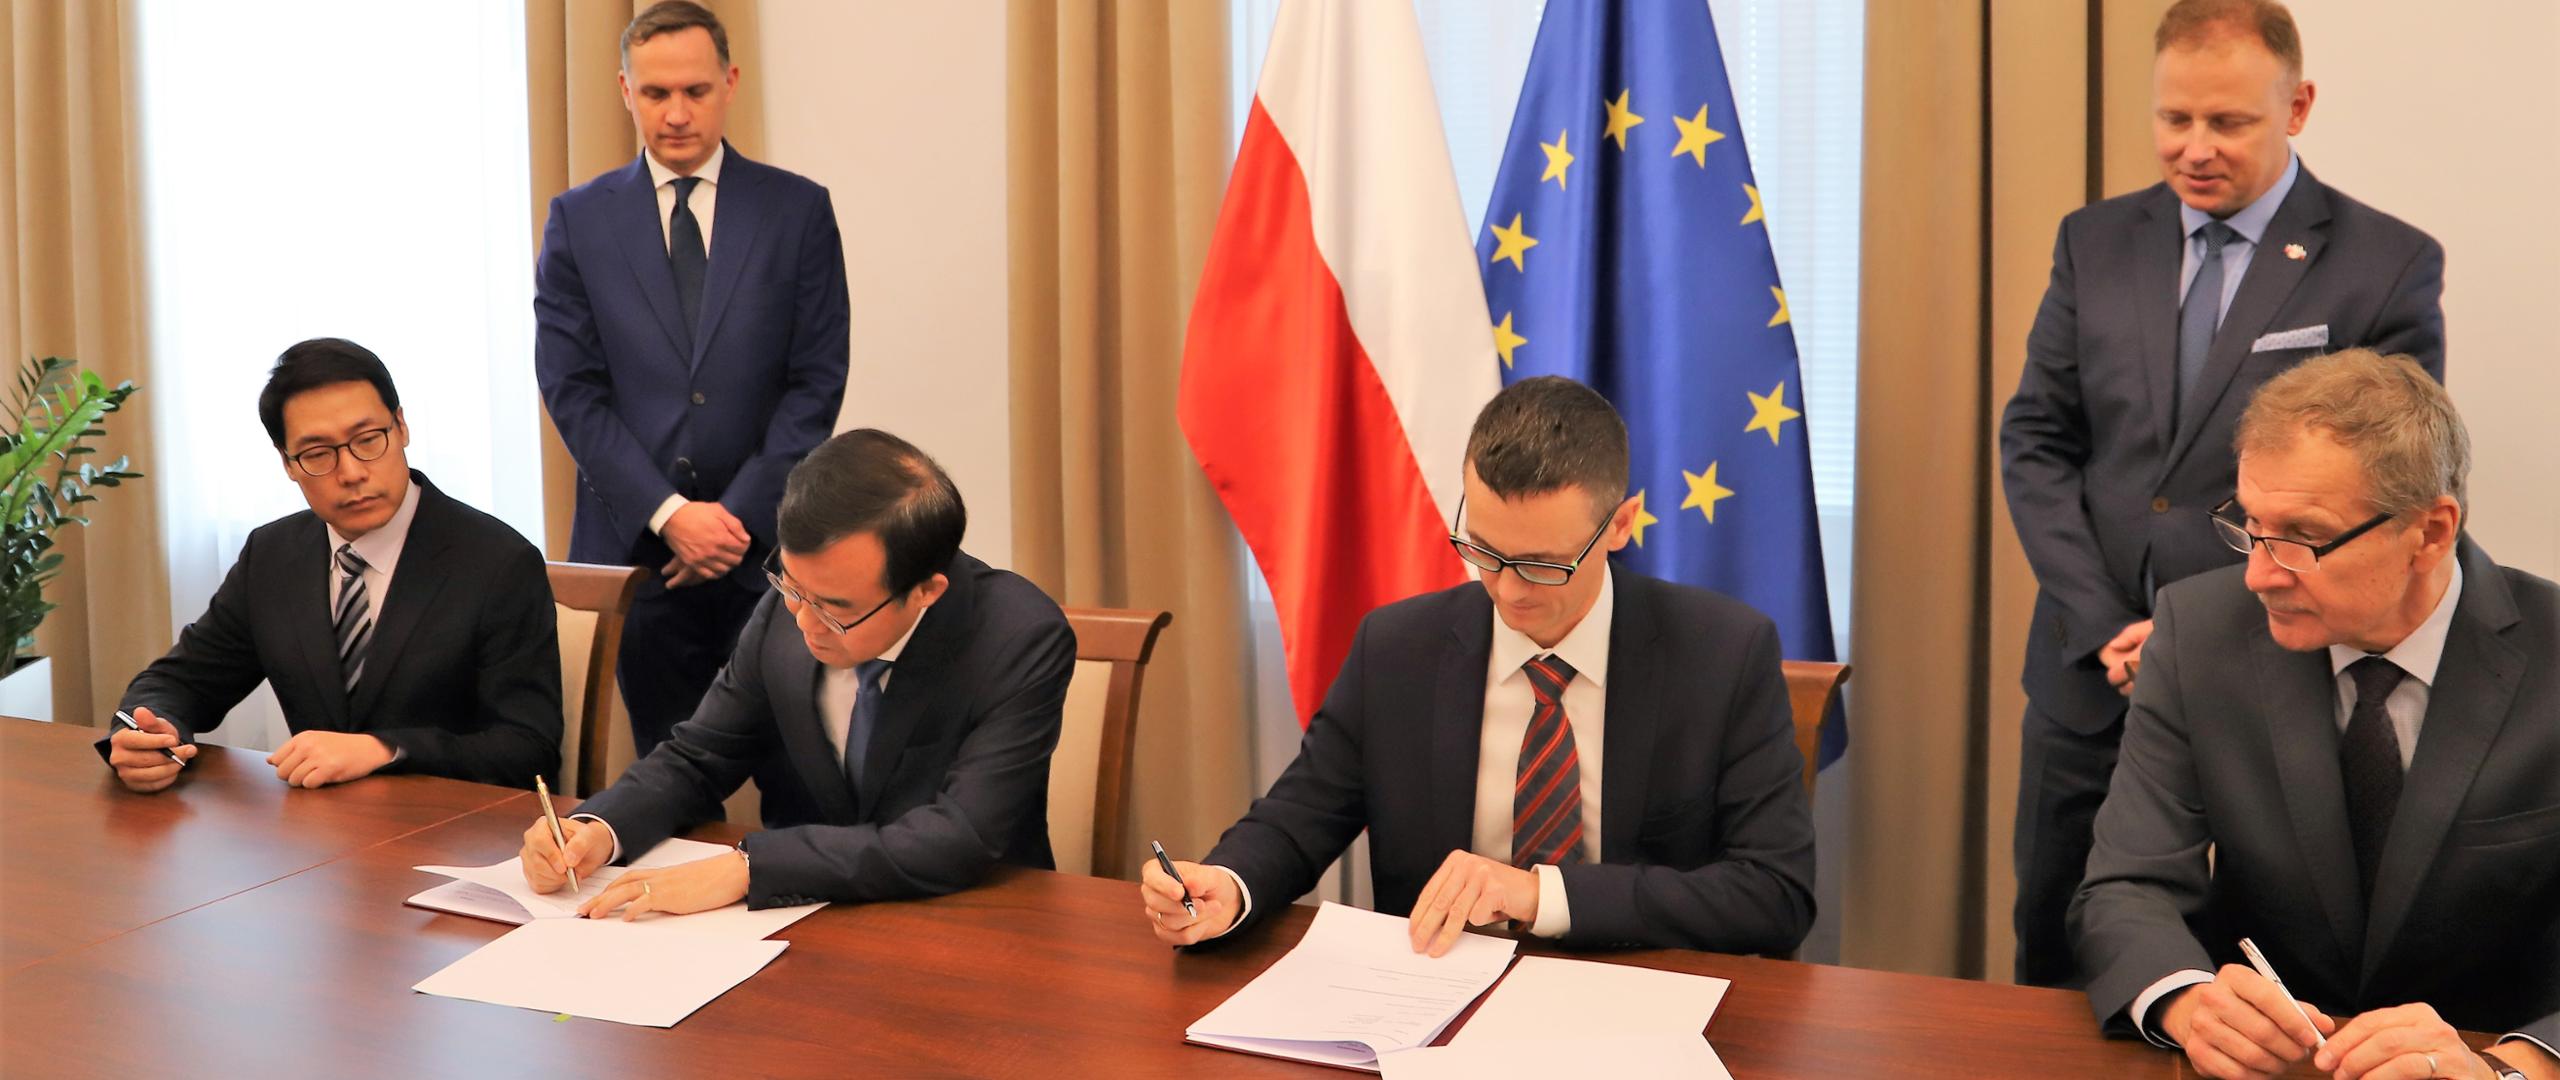 Dwóch mężczyzn siedzących przy stole i podpisujących porozumienie. W tle flagi Polski i UE.